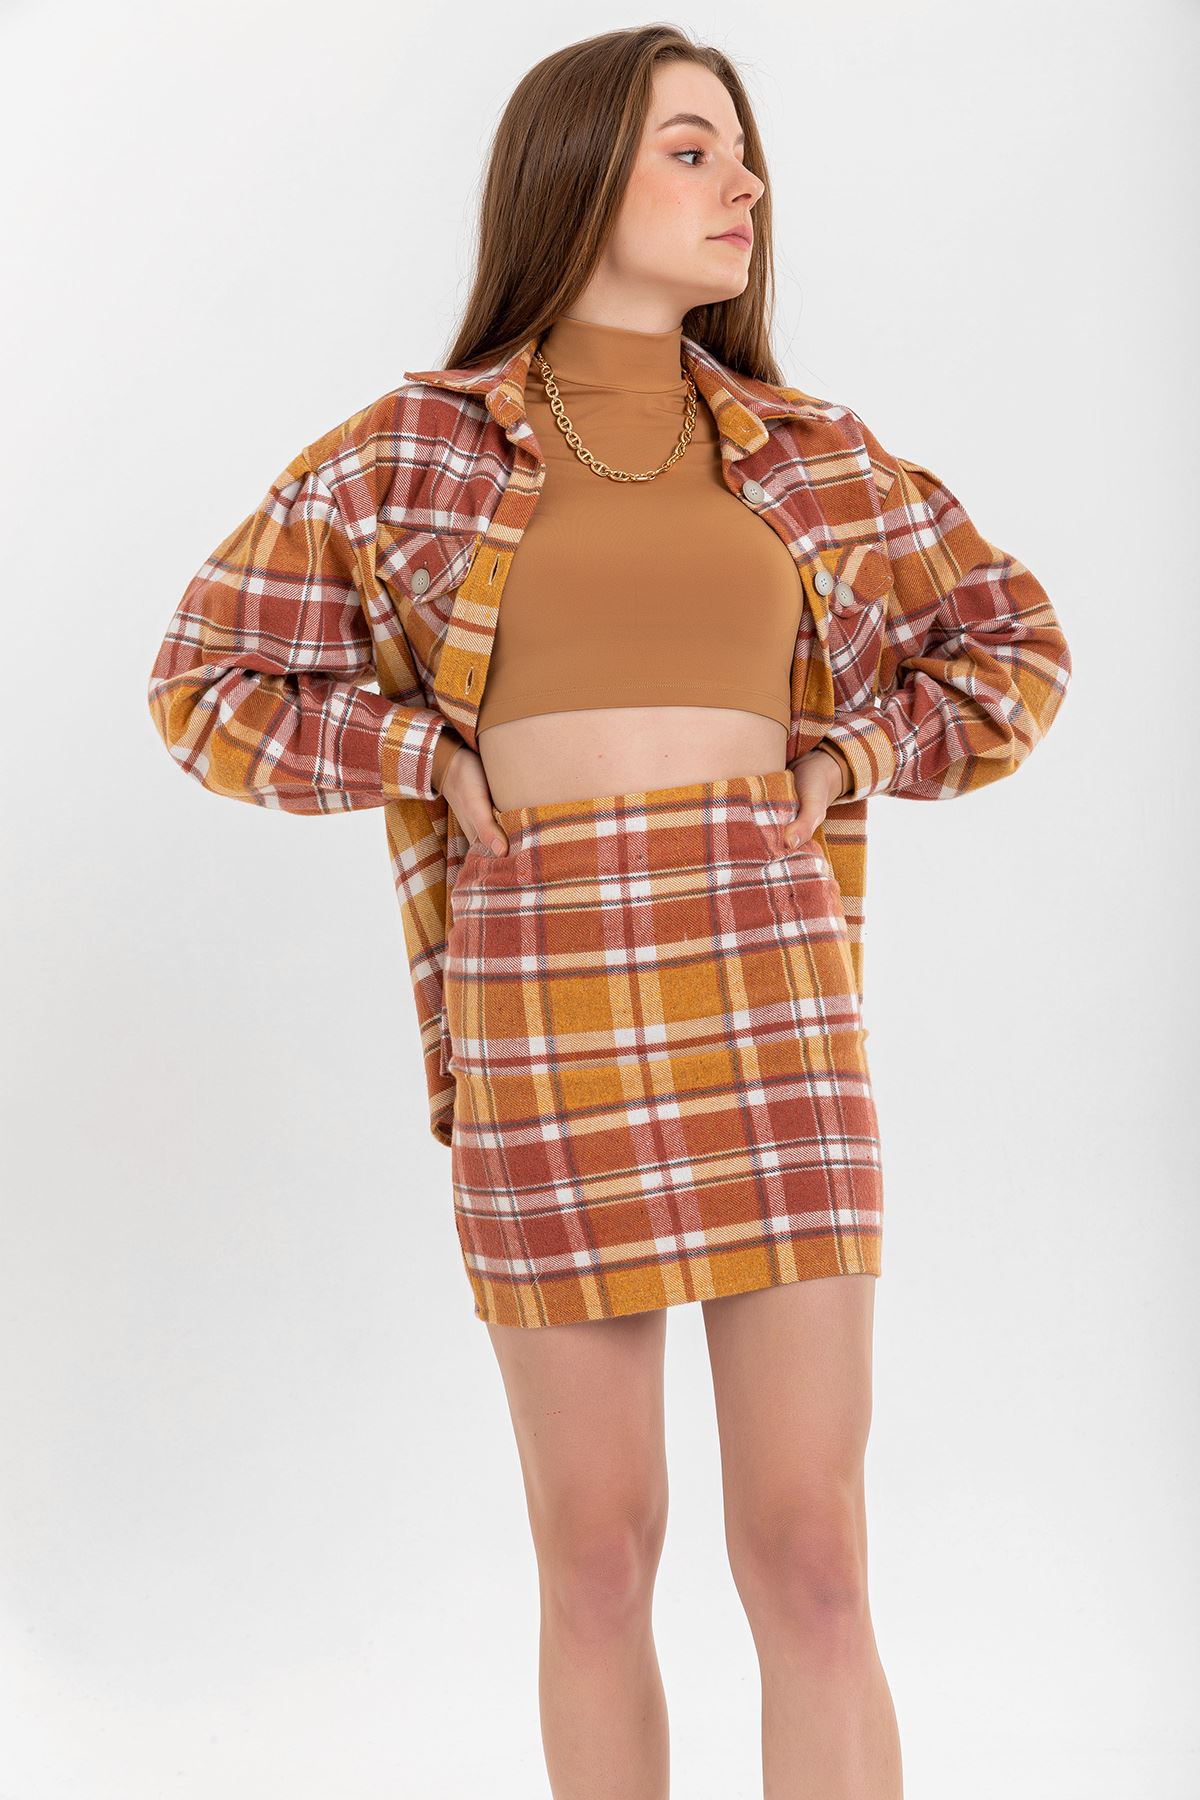 Lumberjack Fabric Long Sleeve Hip Height Oversize Striped Women'S Shirt - Light Brown